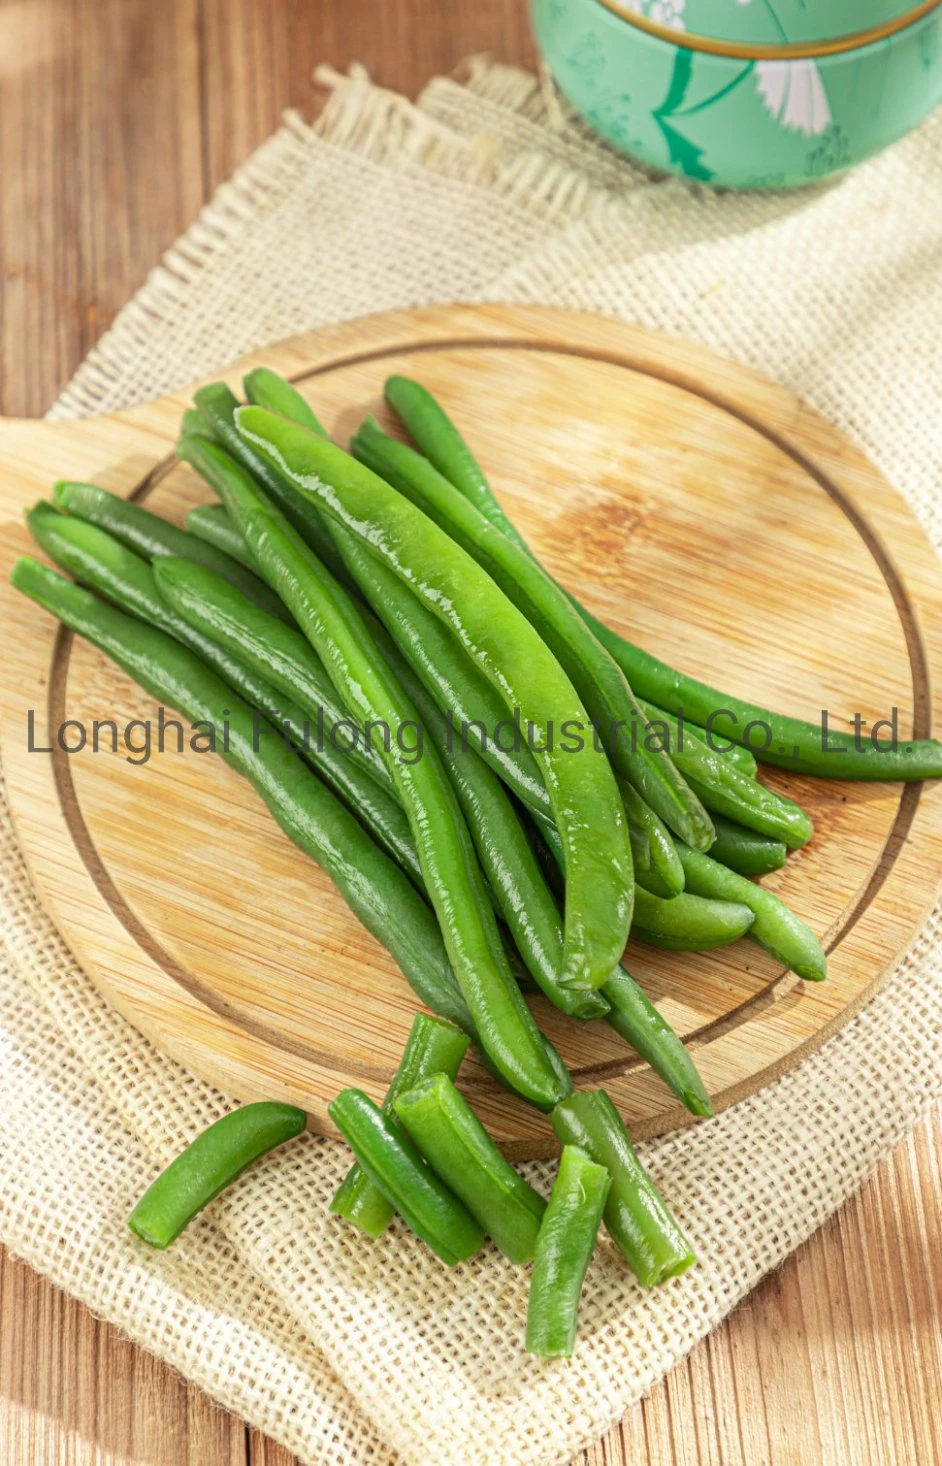 IQF Green Beans Frozen Green Beans Cut Frozen Vegetable